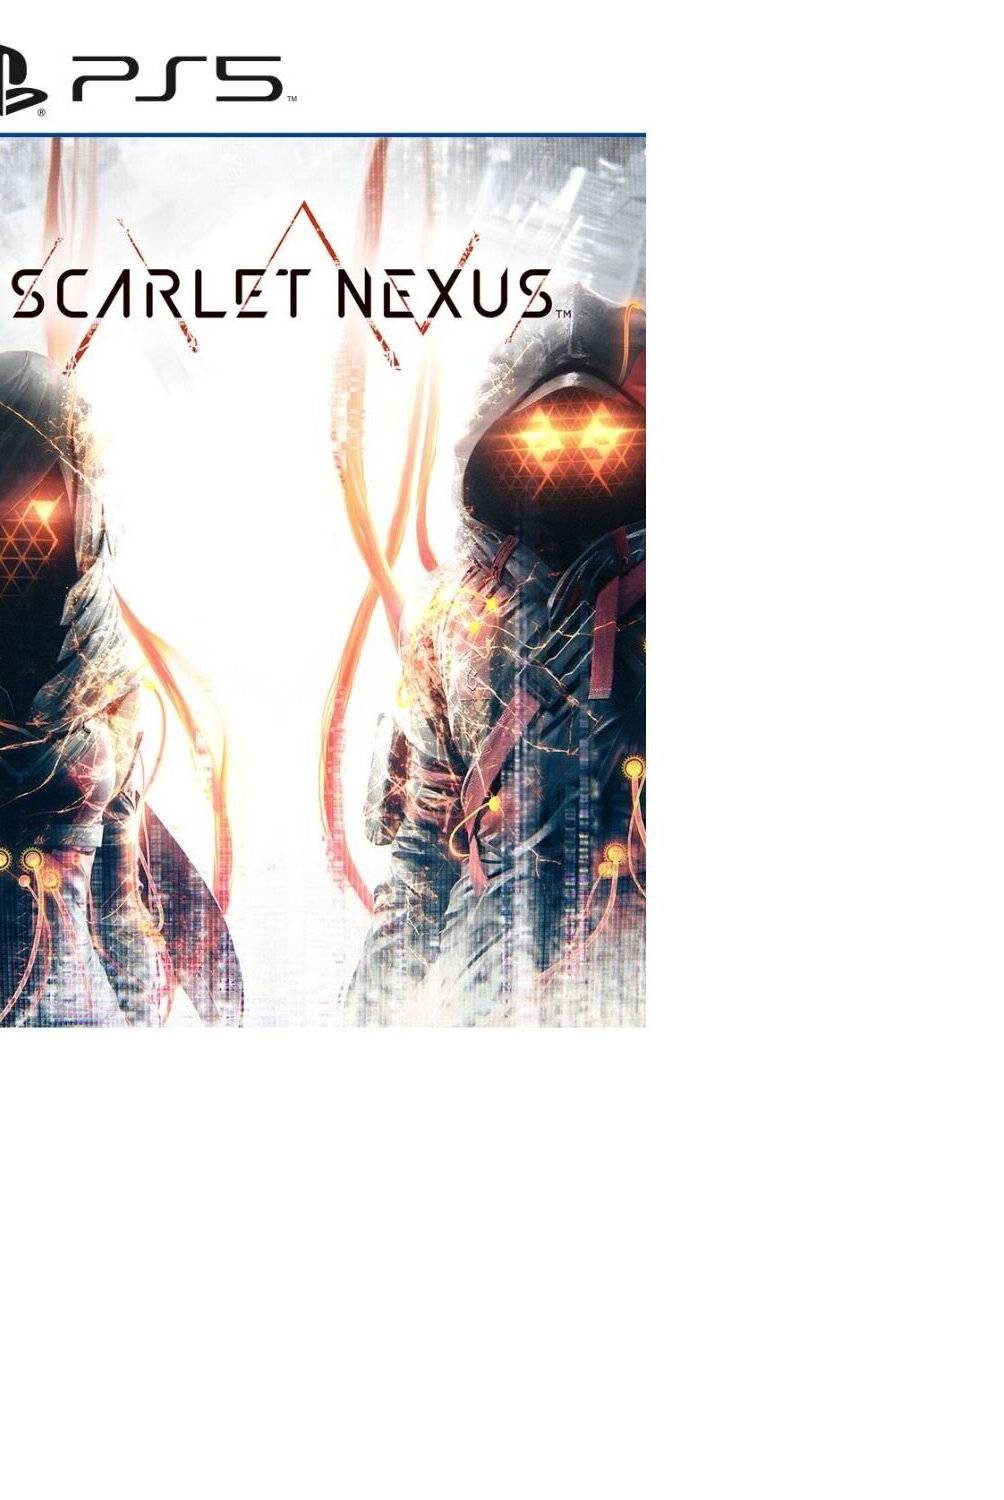 BANDAI NAMCO - Scarlet Nexus - Ps5